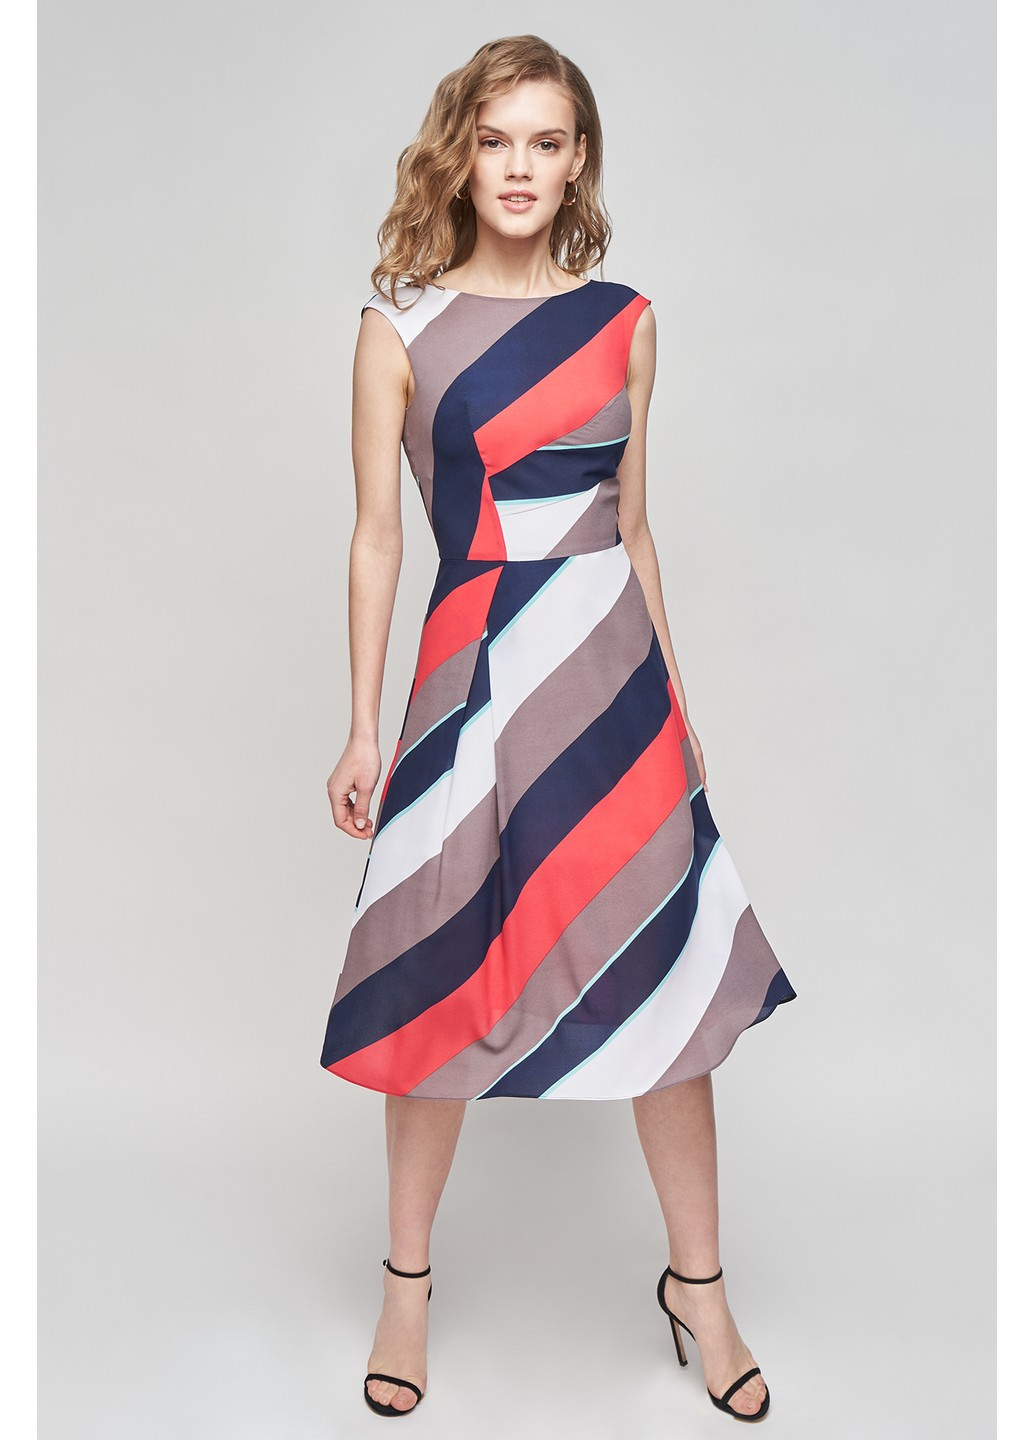 Комбінована ділова сукня тара кльош, з пишною спідницею BYURSE з абстрактним візерунком